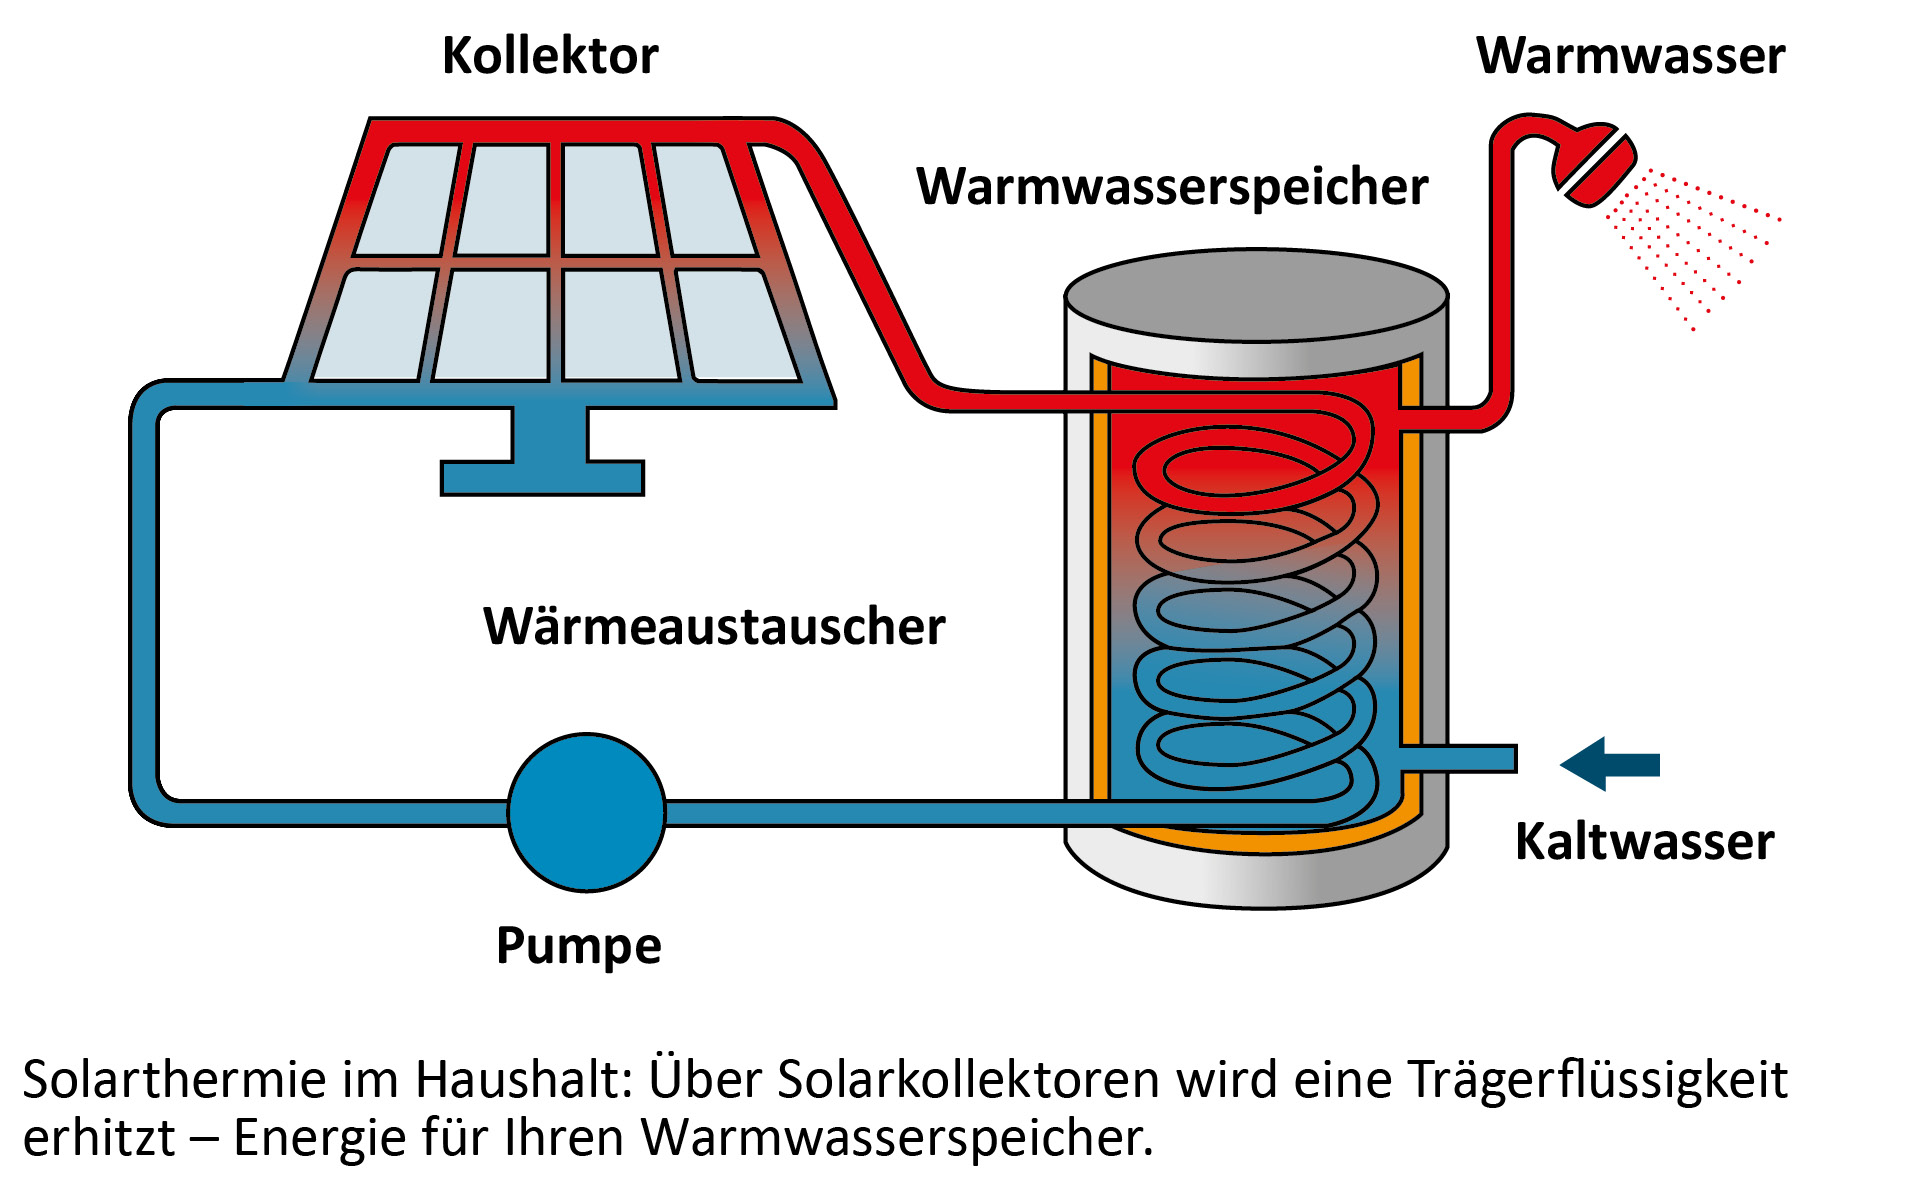 Die Grafik zeigt, wie die Solarthermieanlage Energie für Wasserspeicher erzeugen kann.